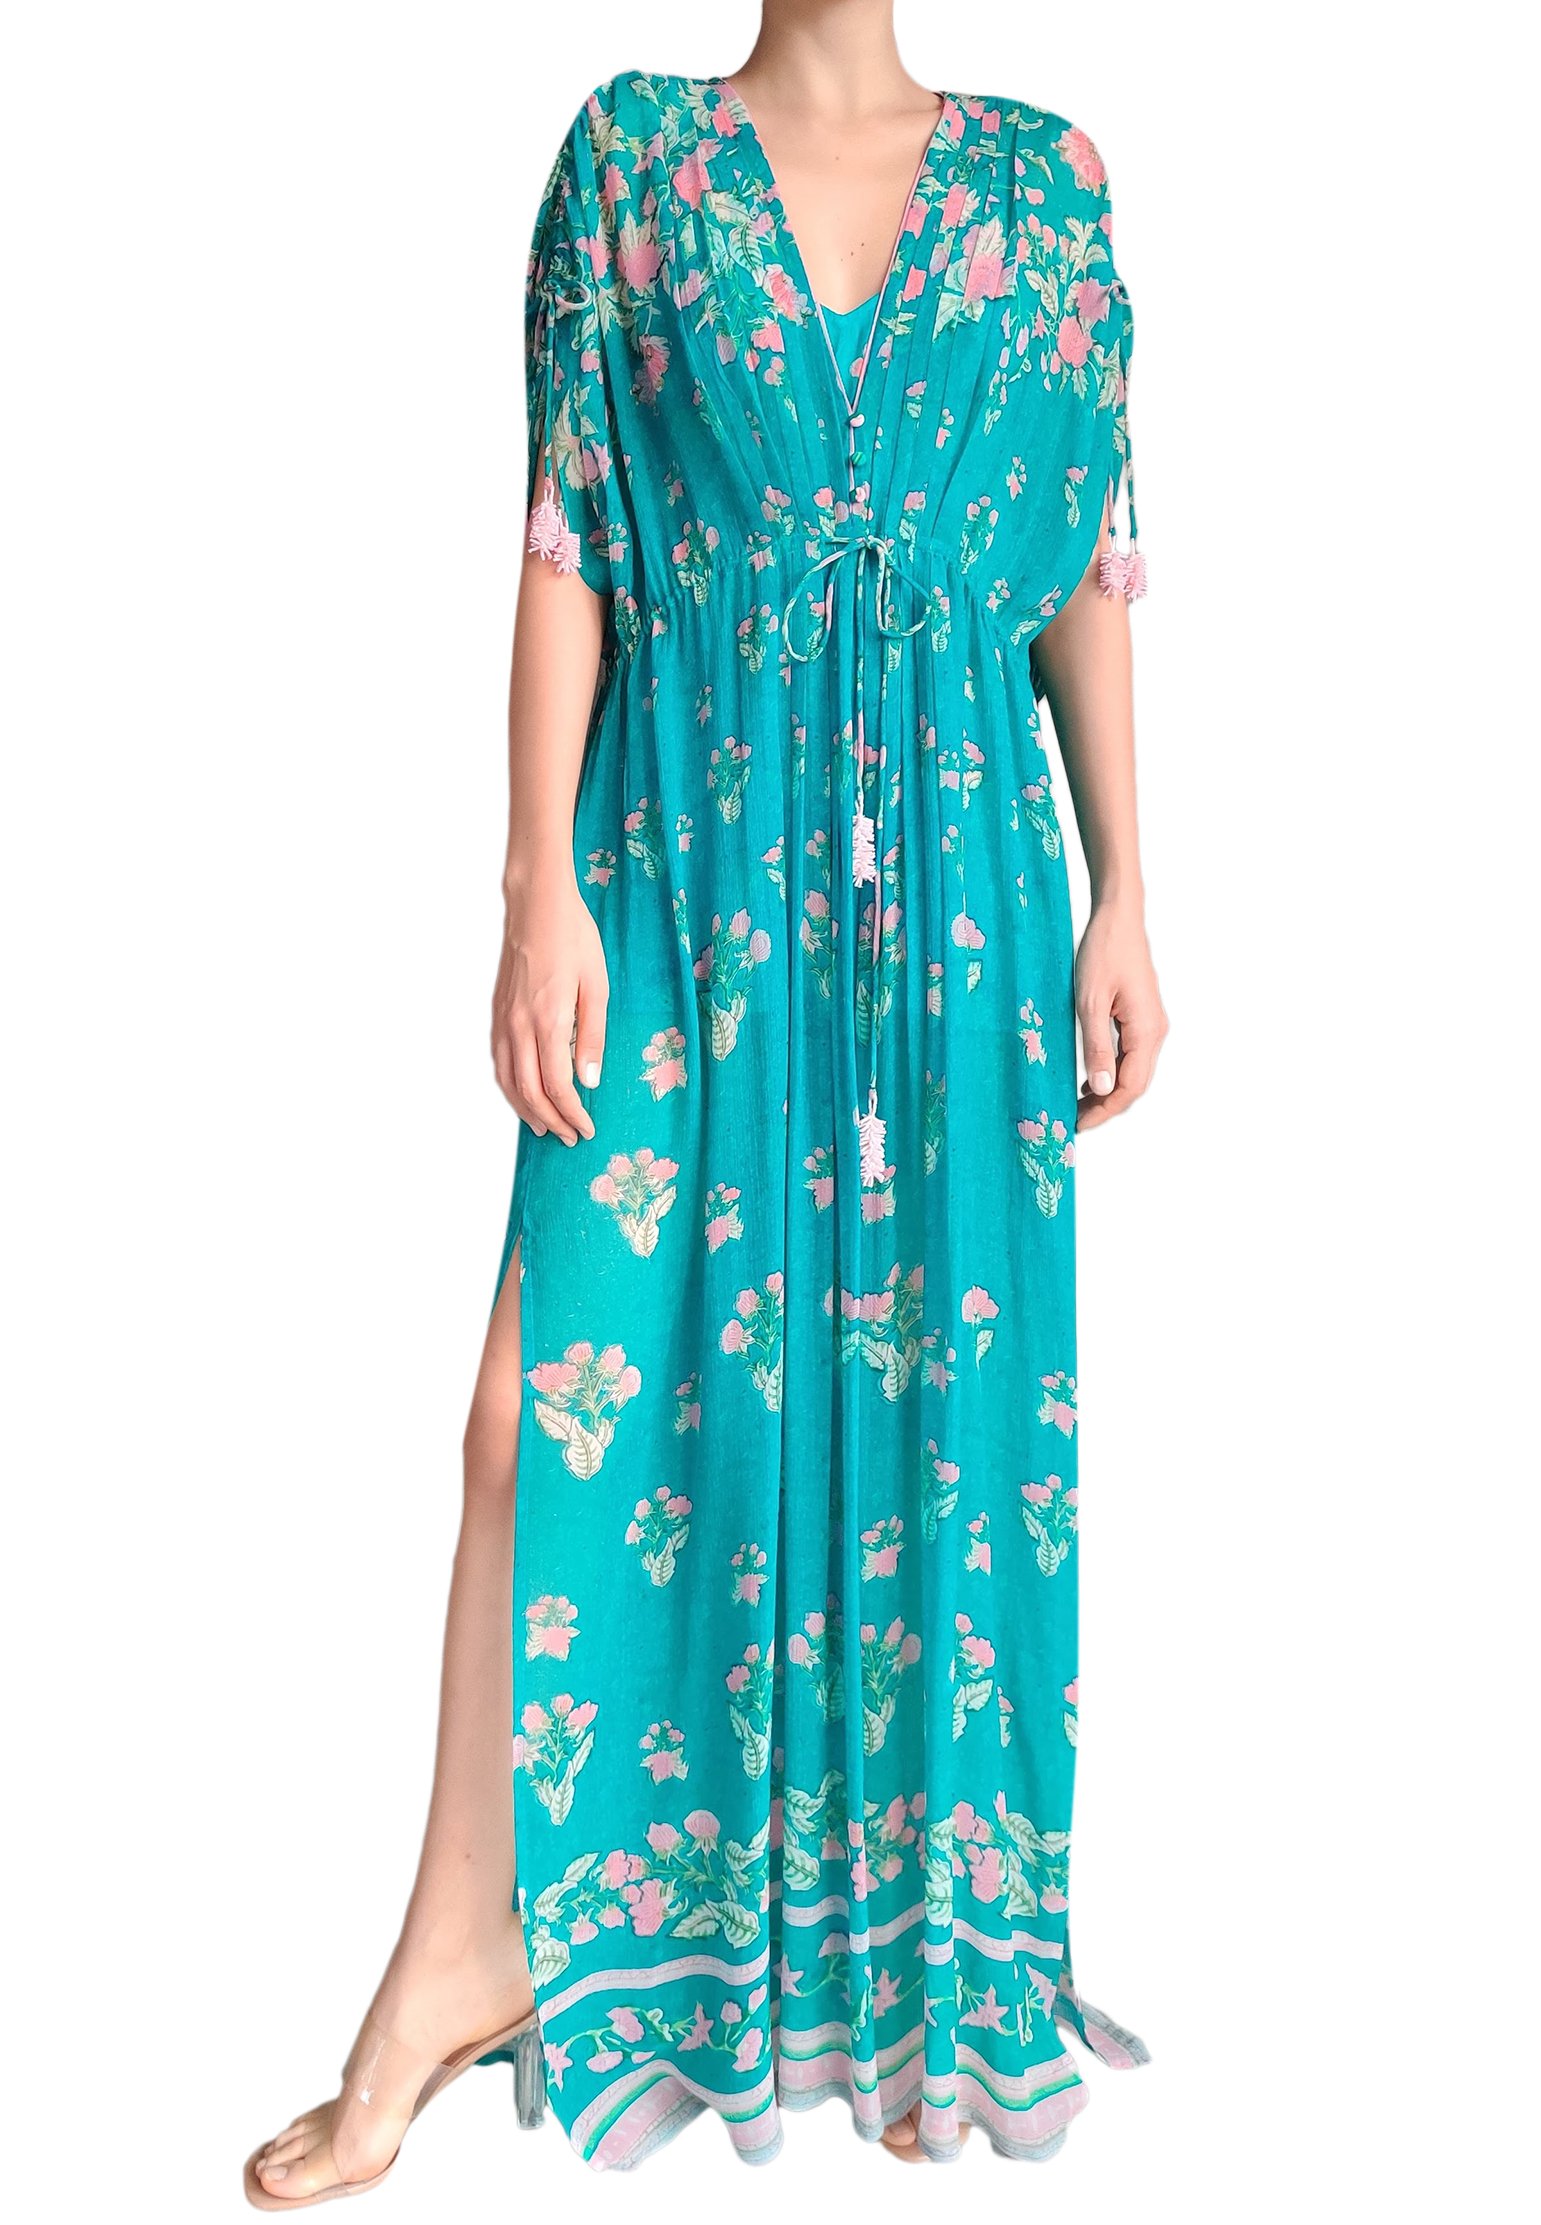 Dress HEMANT&NANDITA Color: green (Code: 749) in online store Allure